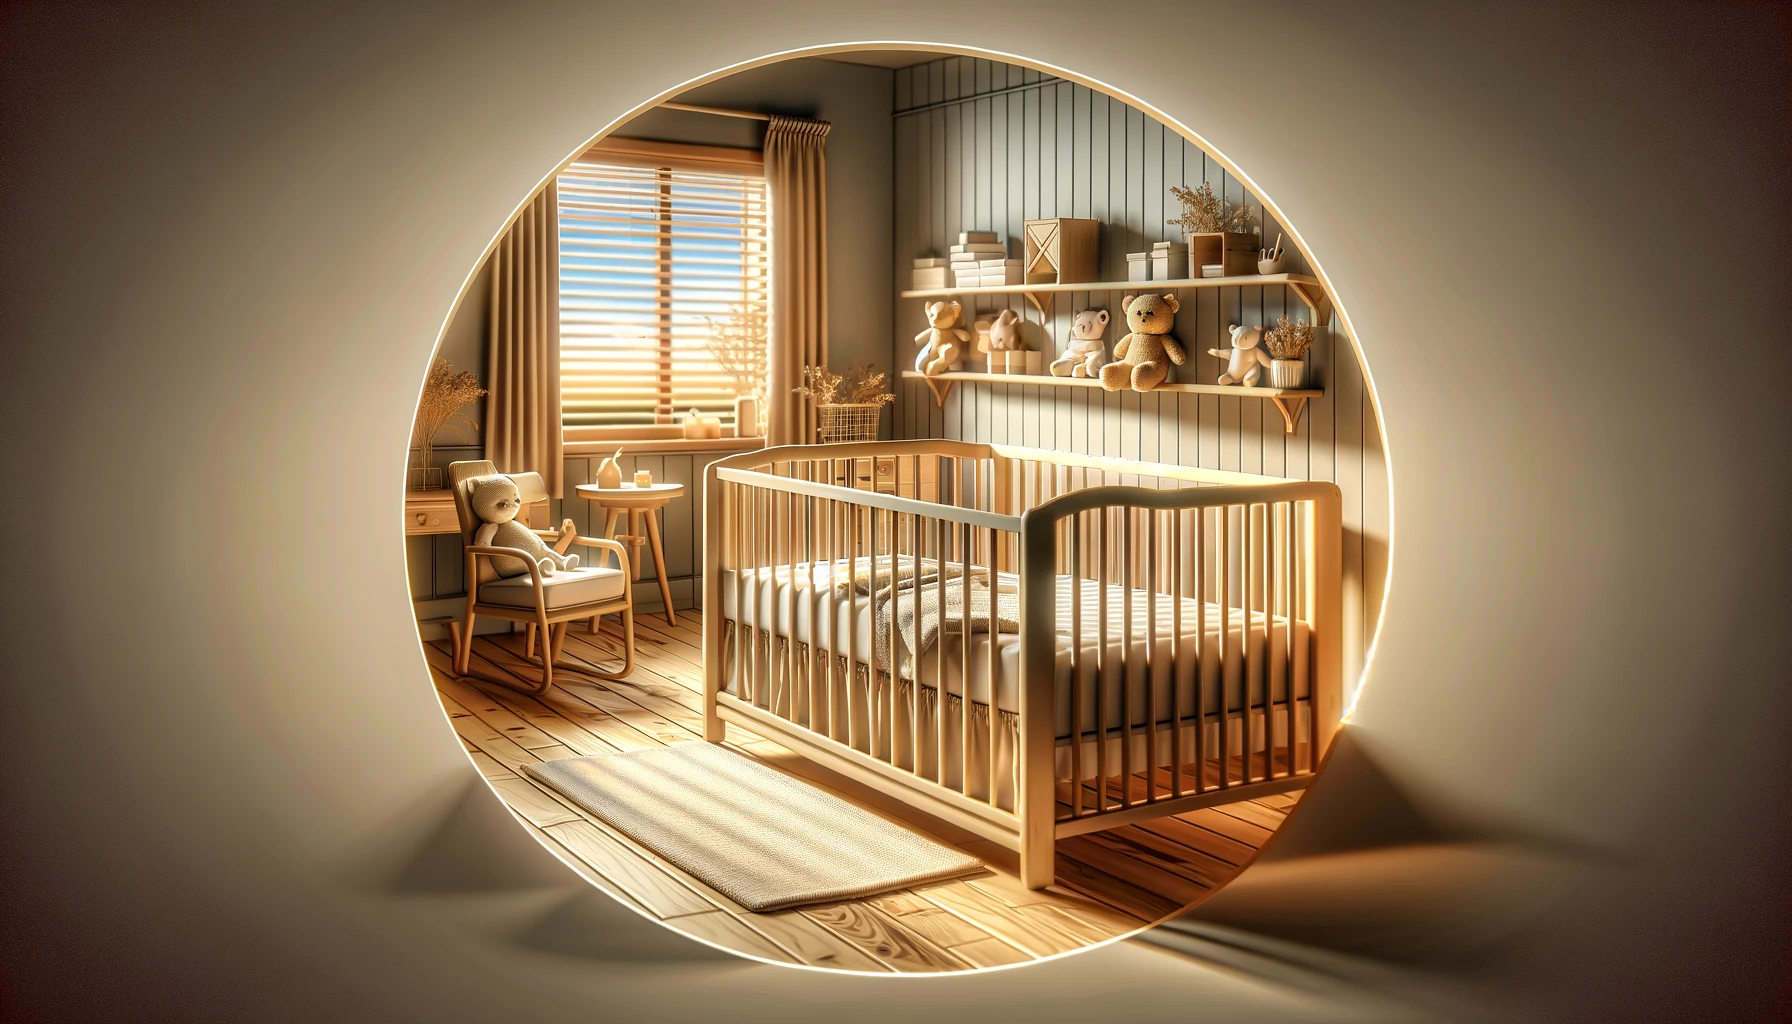 Onderzoek naar veilig slapen voor baby's